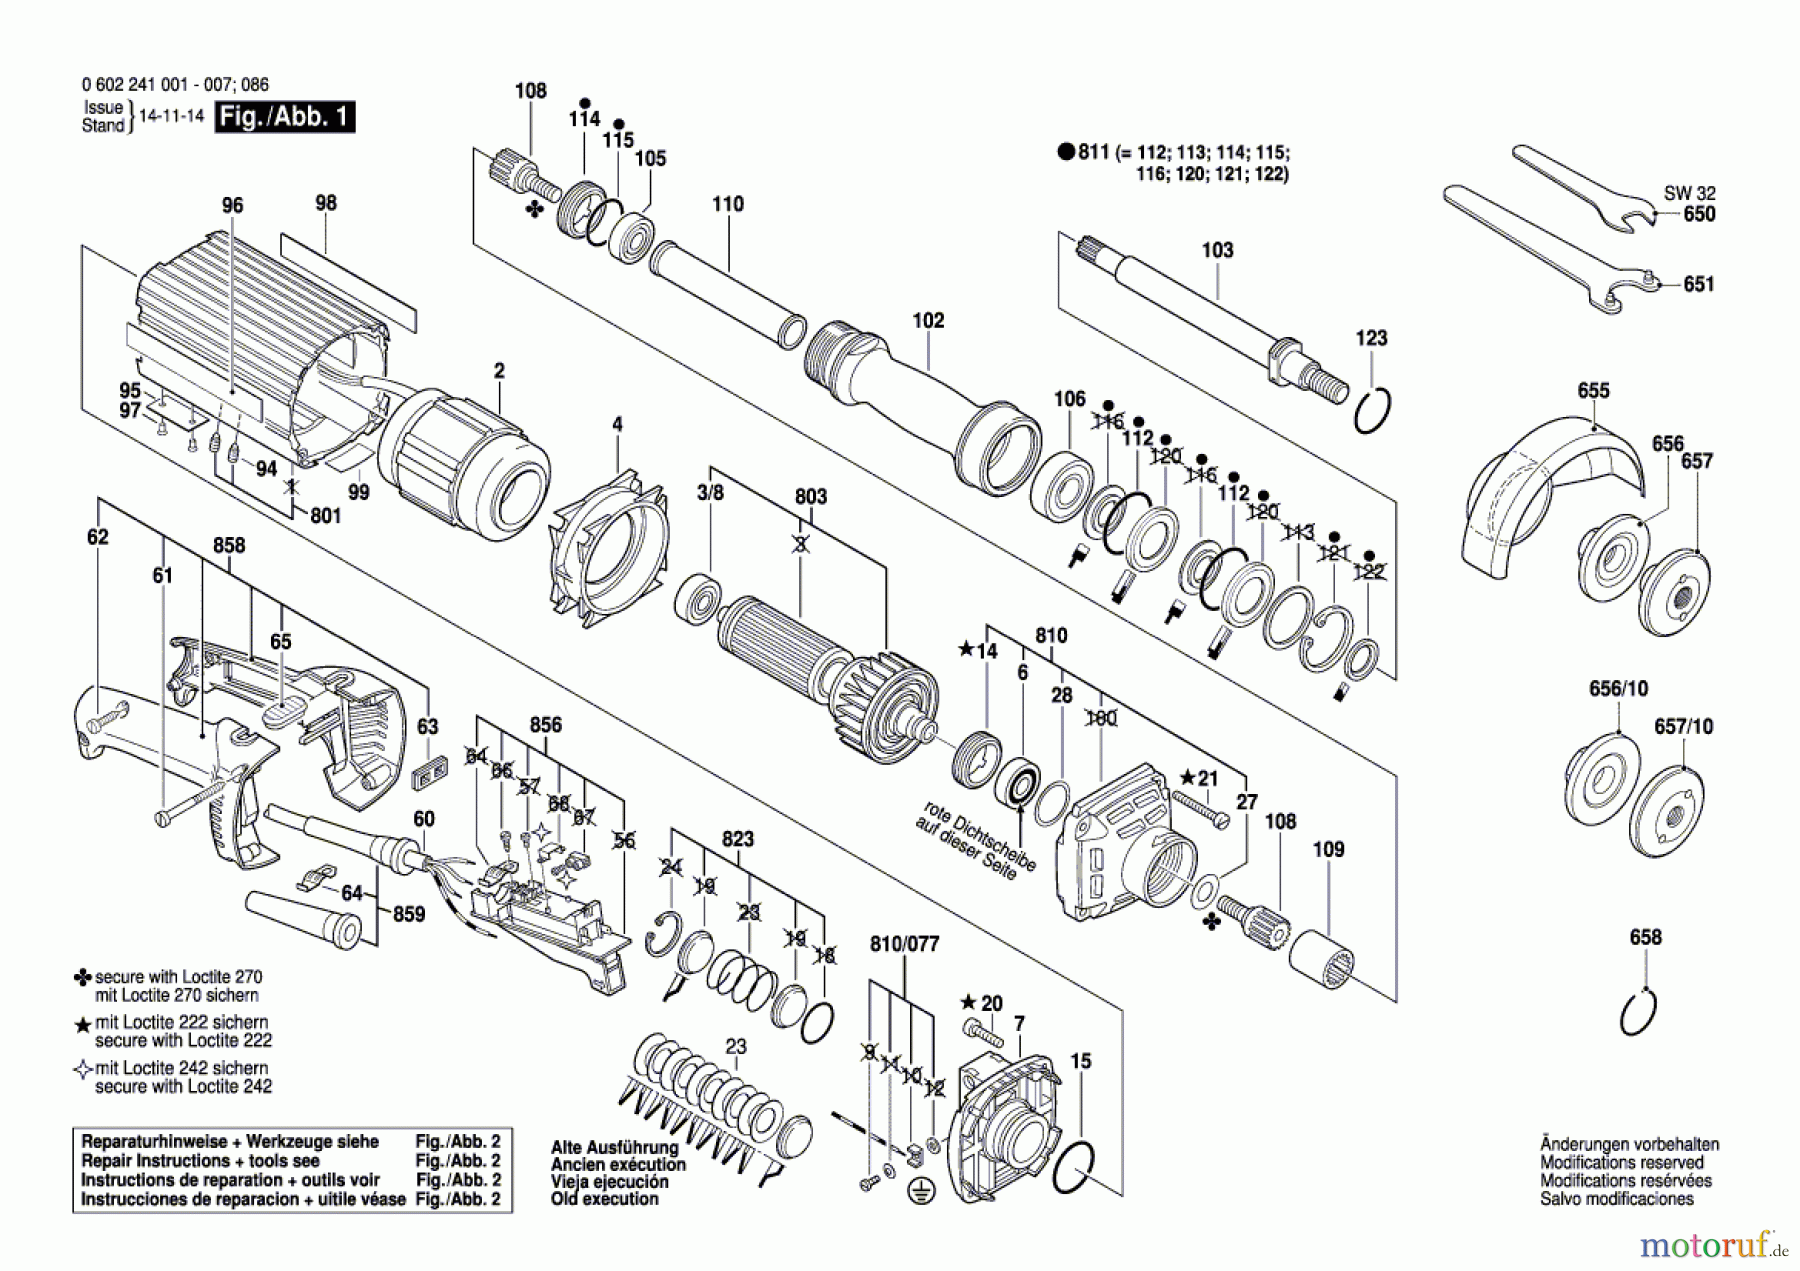  Bosch Werkzeug Hf-Geradschleifer 2 241 Seite 1